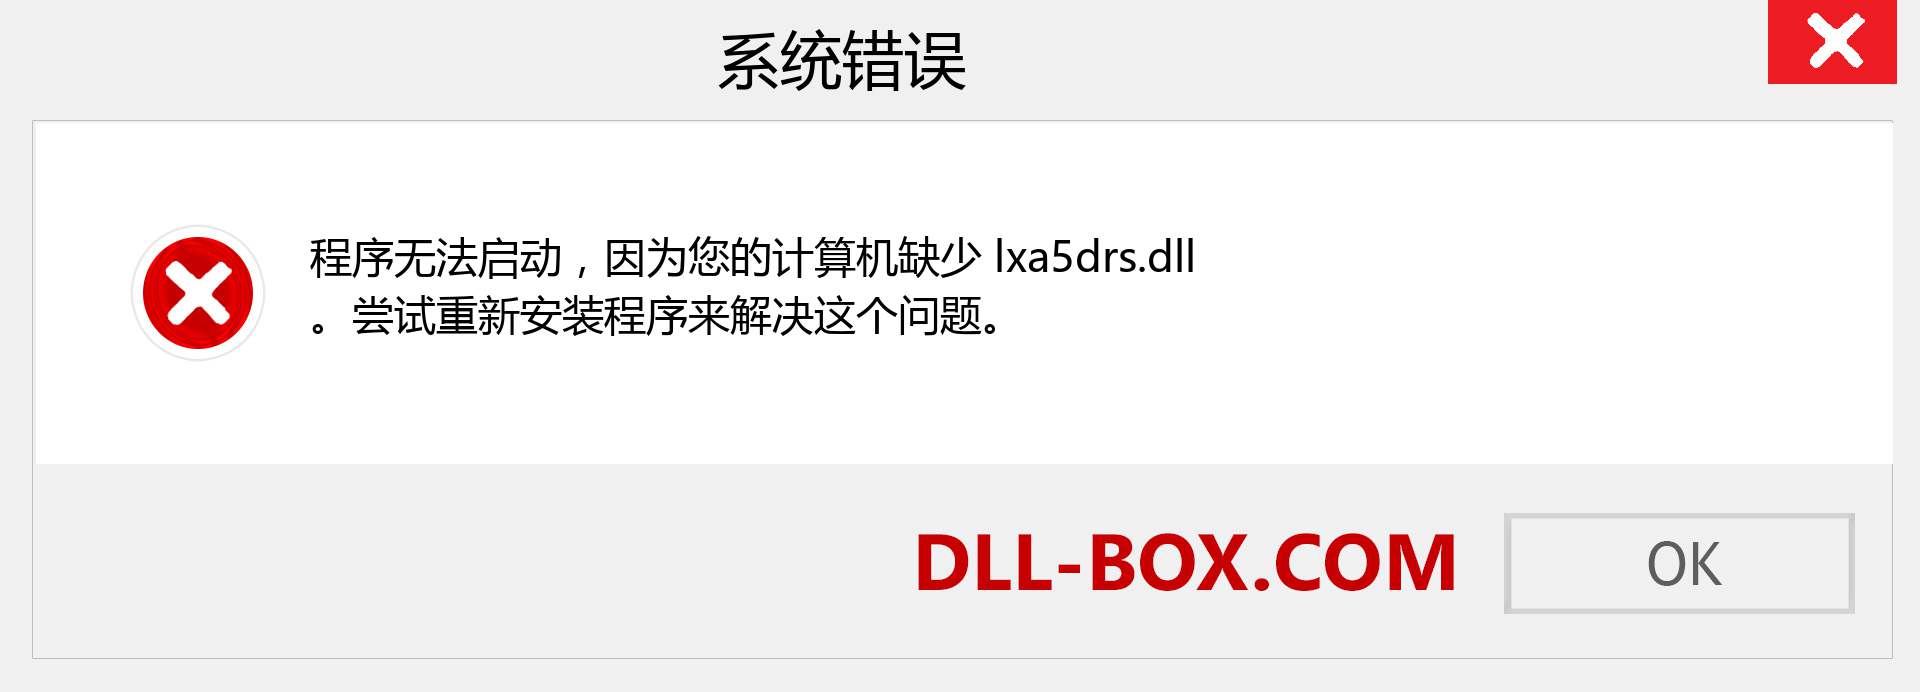 lxa5drs.dll 文件丢失？。 适用于 Windows 7、8、10 的下载 - 修复 Windows、照片、图像上的 lxa5drs dll 丢失错误